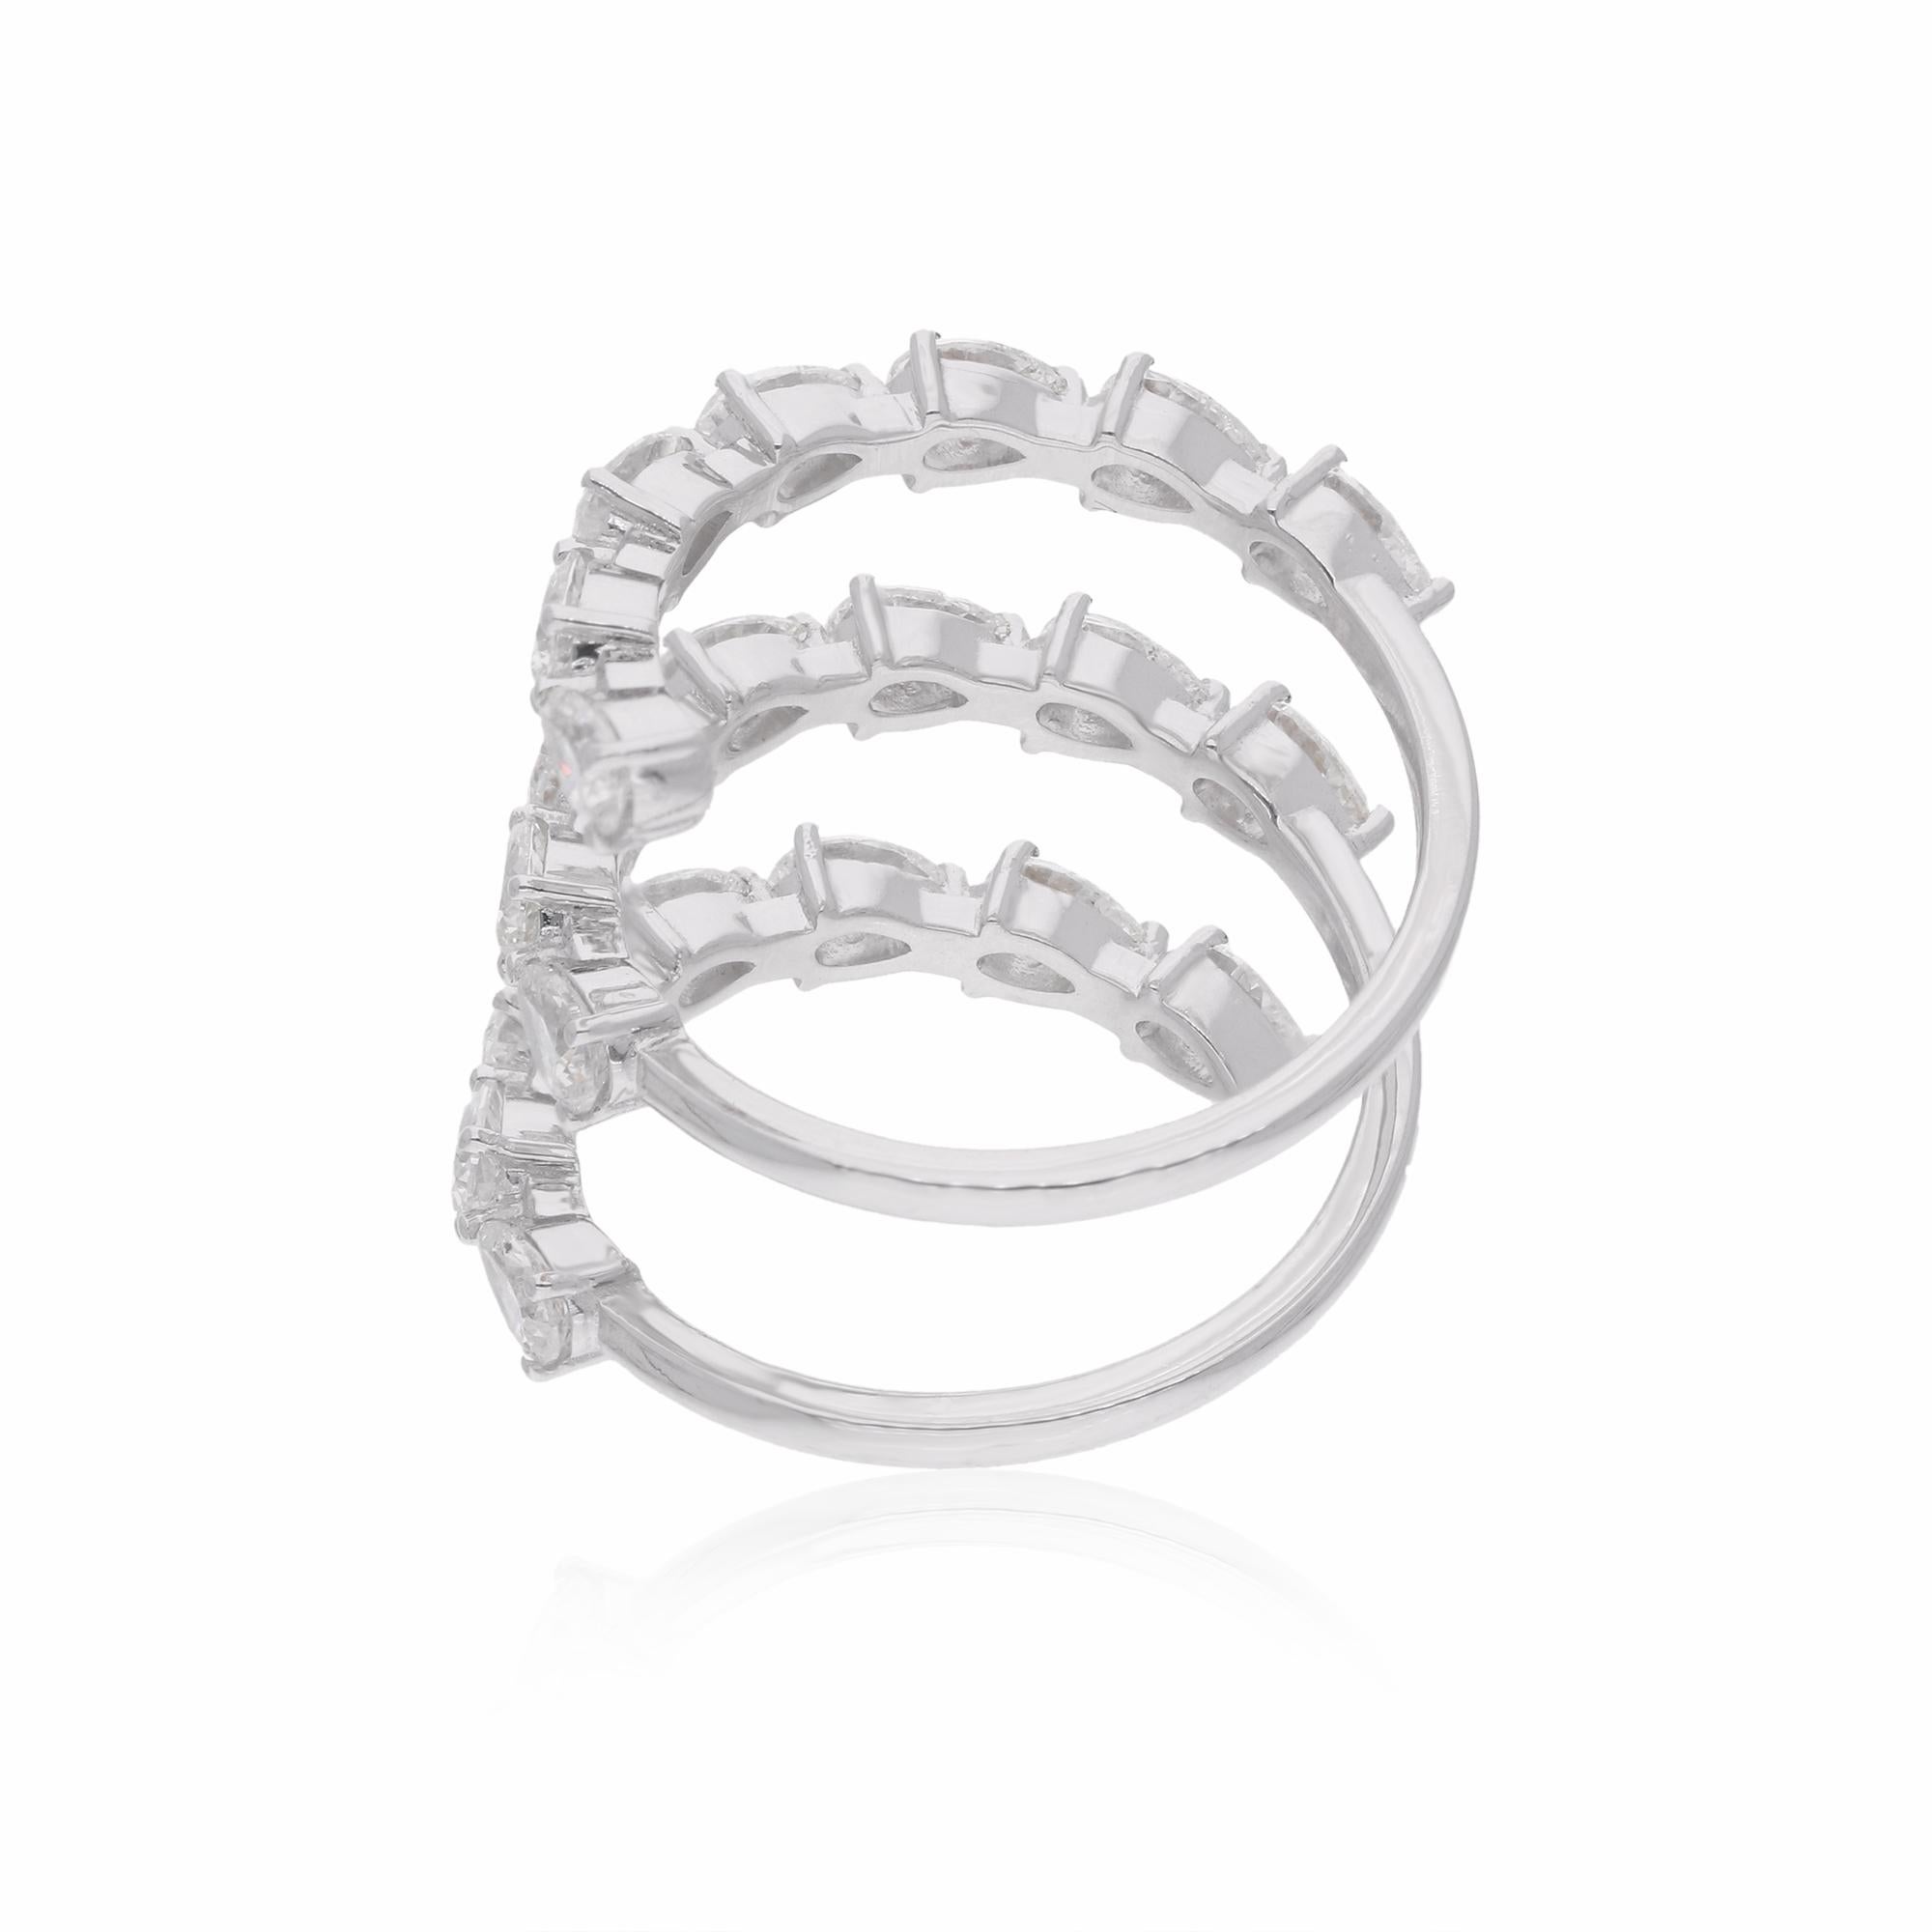 Tauchen Sie ein in den Inbegriff von Eleganz mit diesem atemberaubenden 2,67-Karat-Diamant-Frühlingsring in Birnenform, der in sorgfältiger Handarbeit aus luxuriösem 18-karätigem Weißgold gefertigt wurde. Dieser Ring ist ein Beweis für handwerkliche